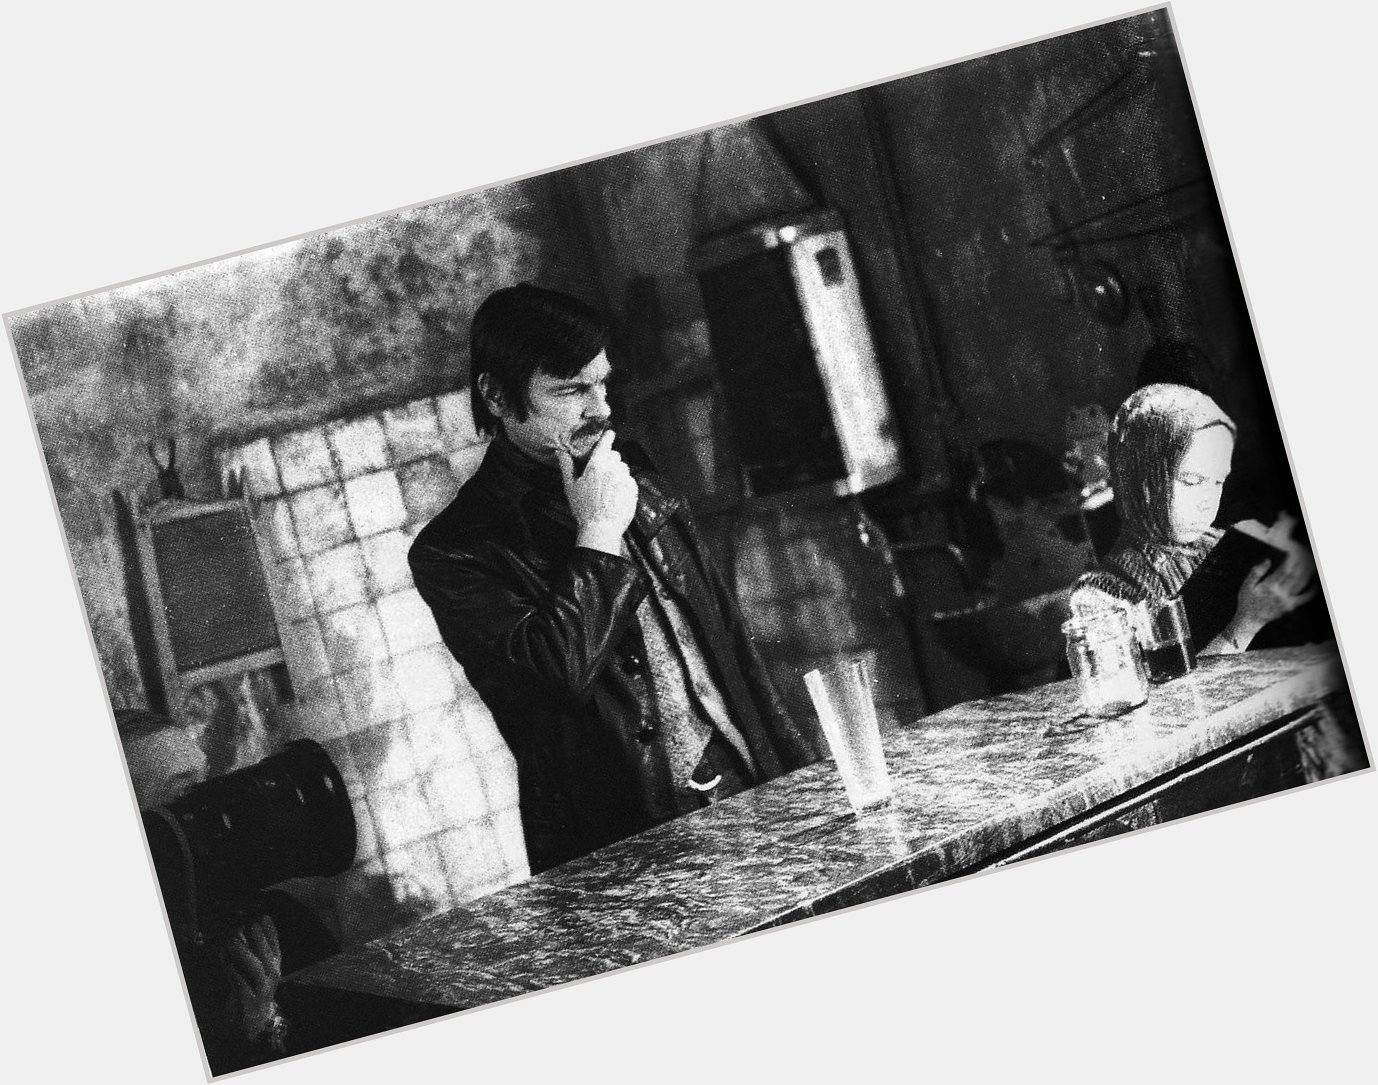 Happy Andrei Tarkovsky\s birthday, everyone. 